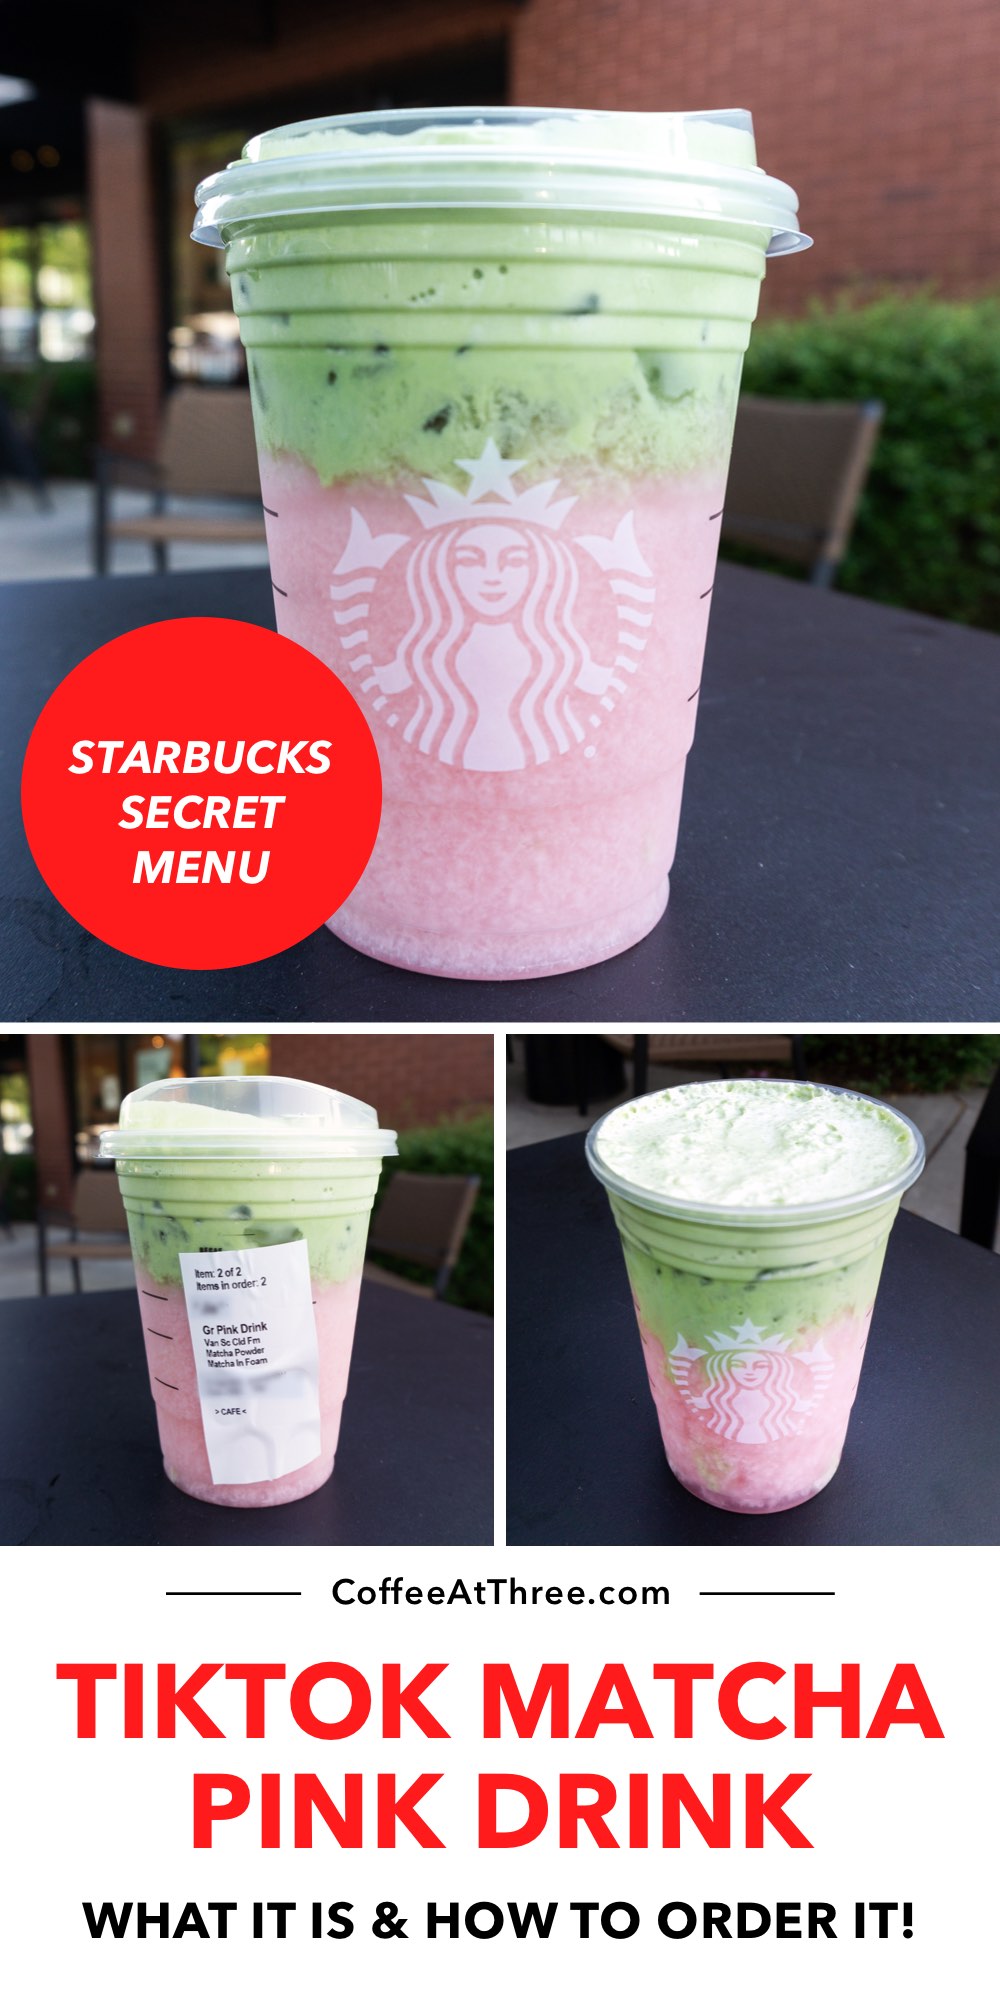 TikTok Matcha Pink Drink (Starbucks Secret Menu)